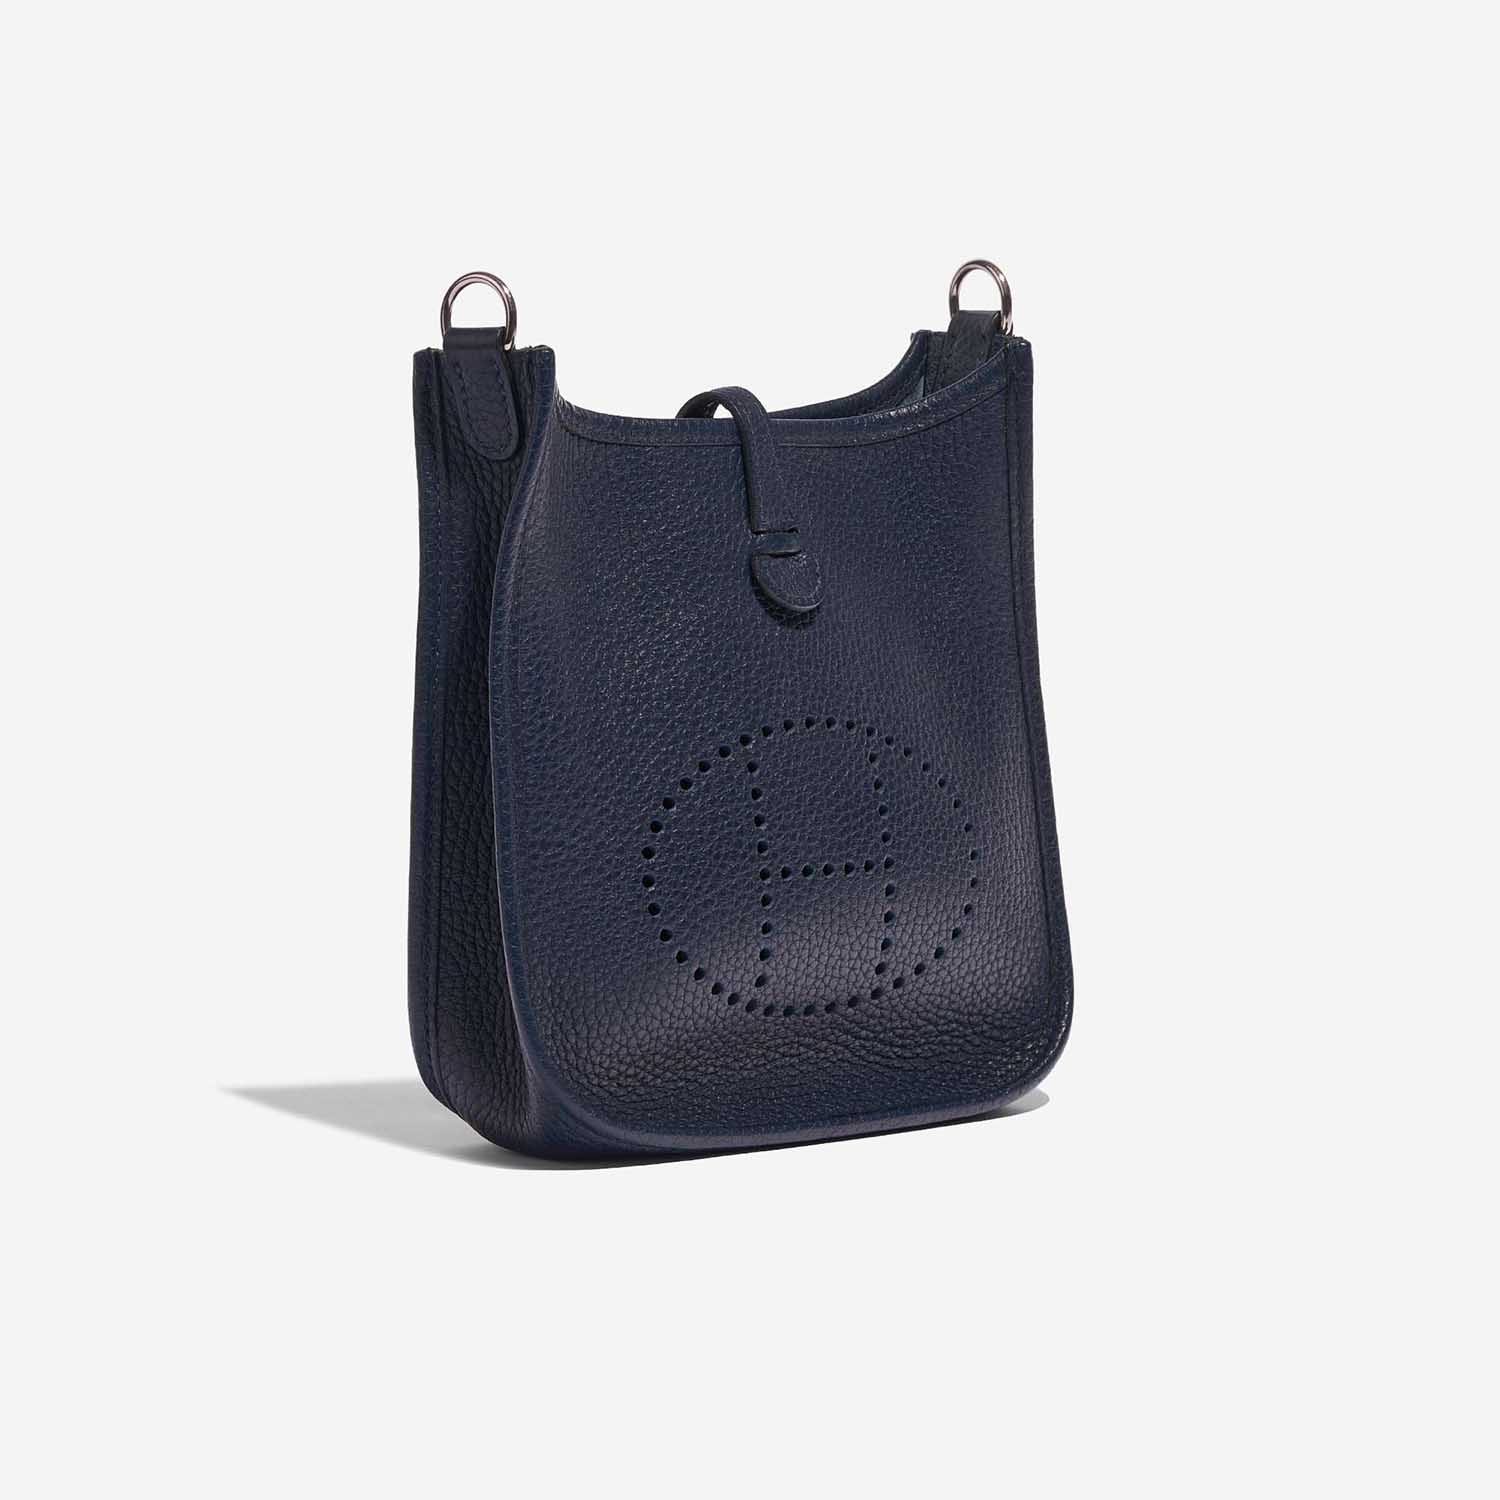 Pre-owned Hermès bag Evelyne 16 Taurillon Clemence Blue Nuit Blue Side Front | Sell your designer bag on Saclab.com